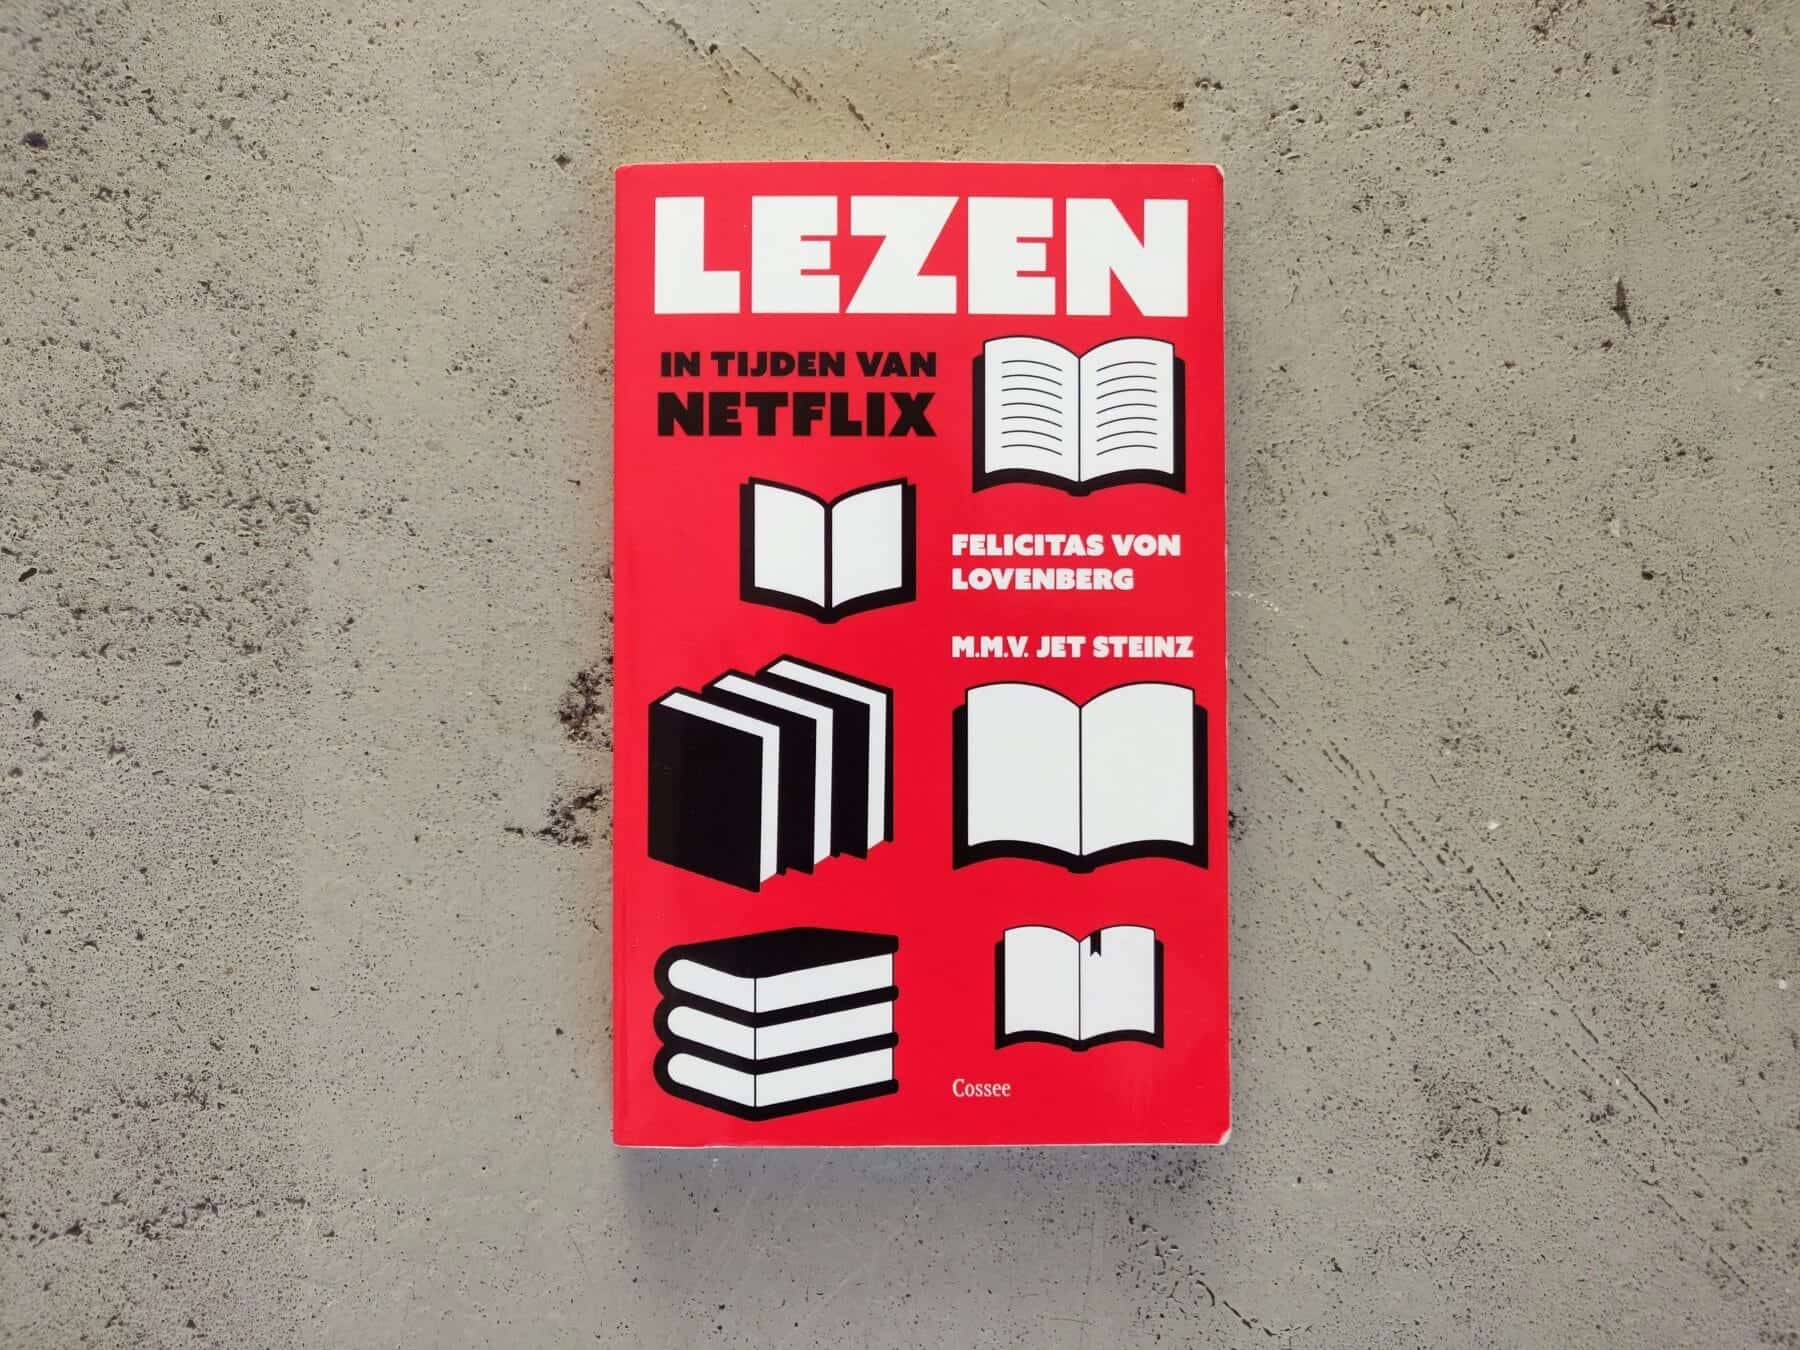 Felicitas von Lovenberg leert ons lezen in tijden van Netflix